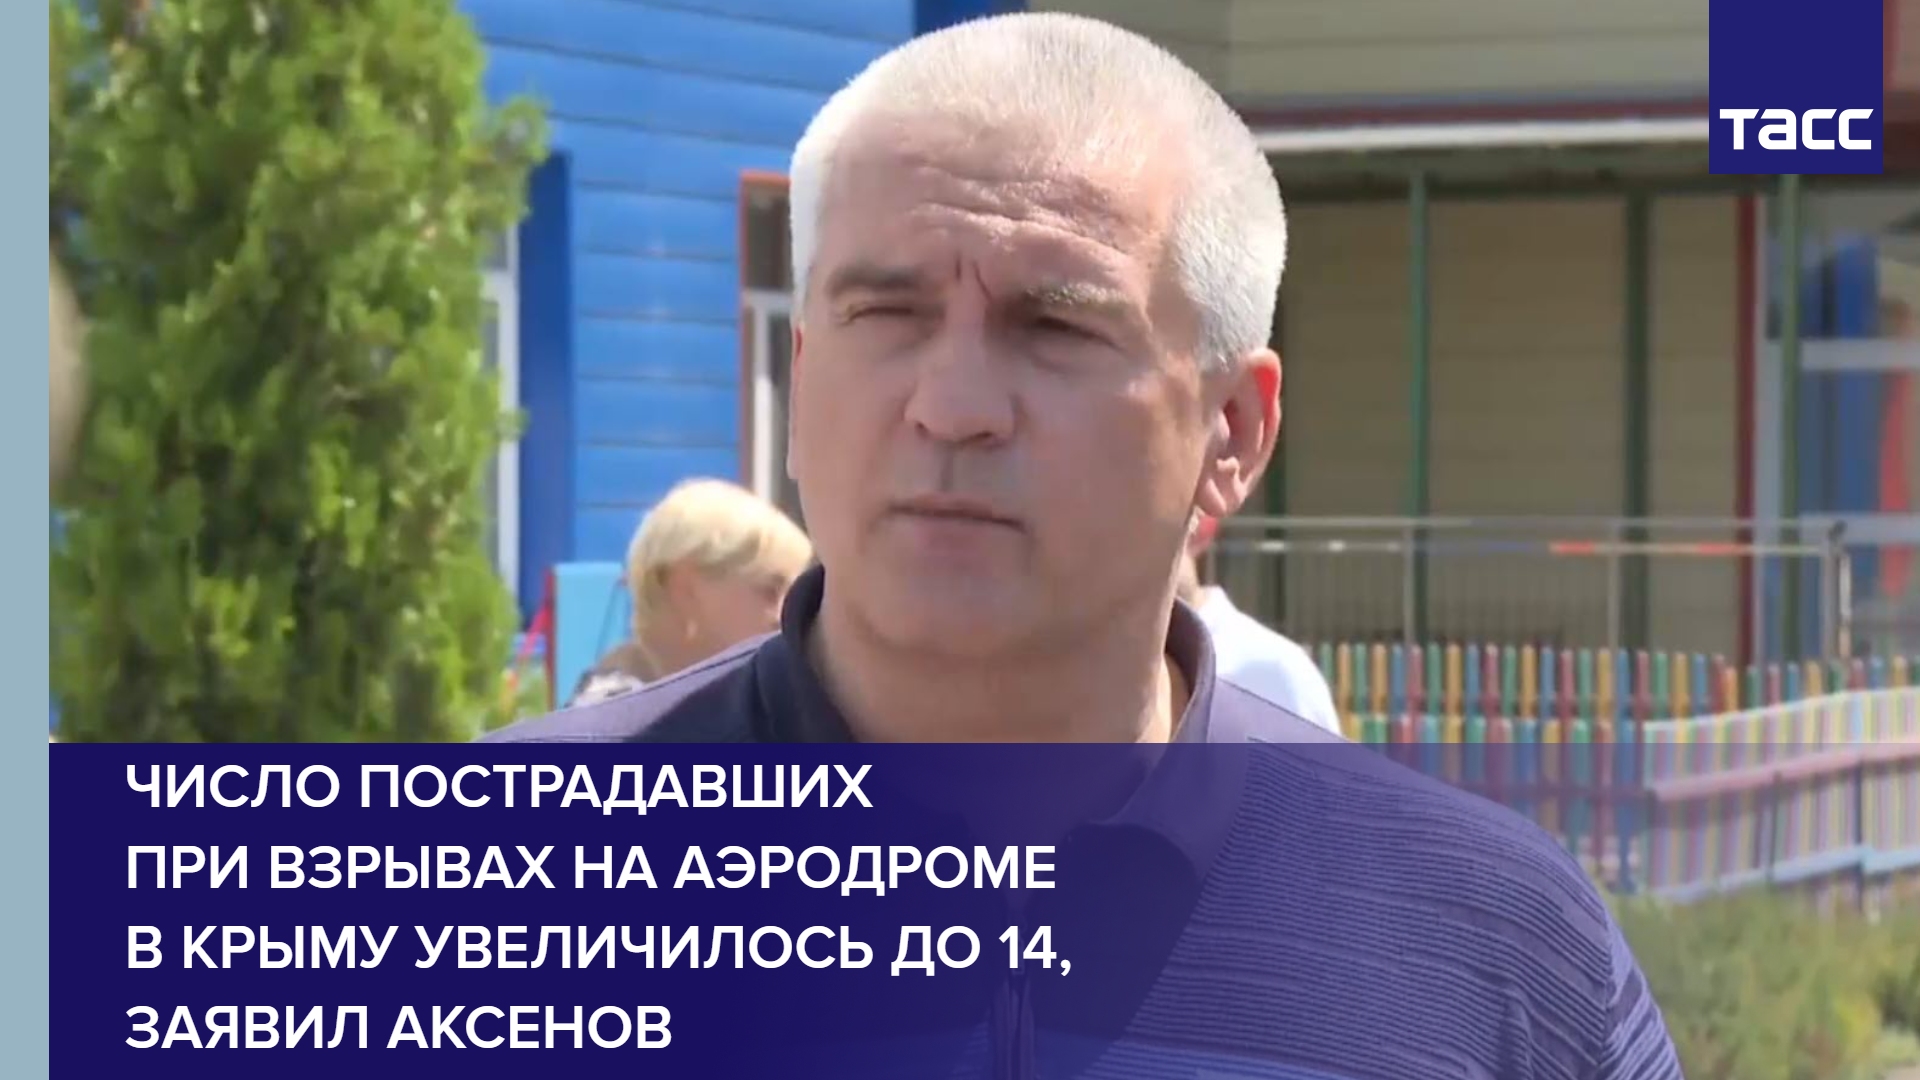 Число пострадавших при взрывах на аэродроме в Крыму увеличилось до 14, заявил Аксенов